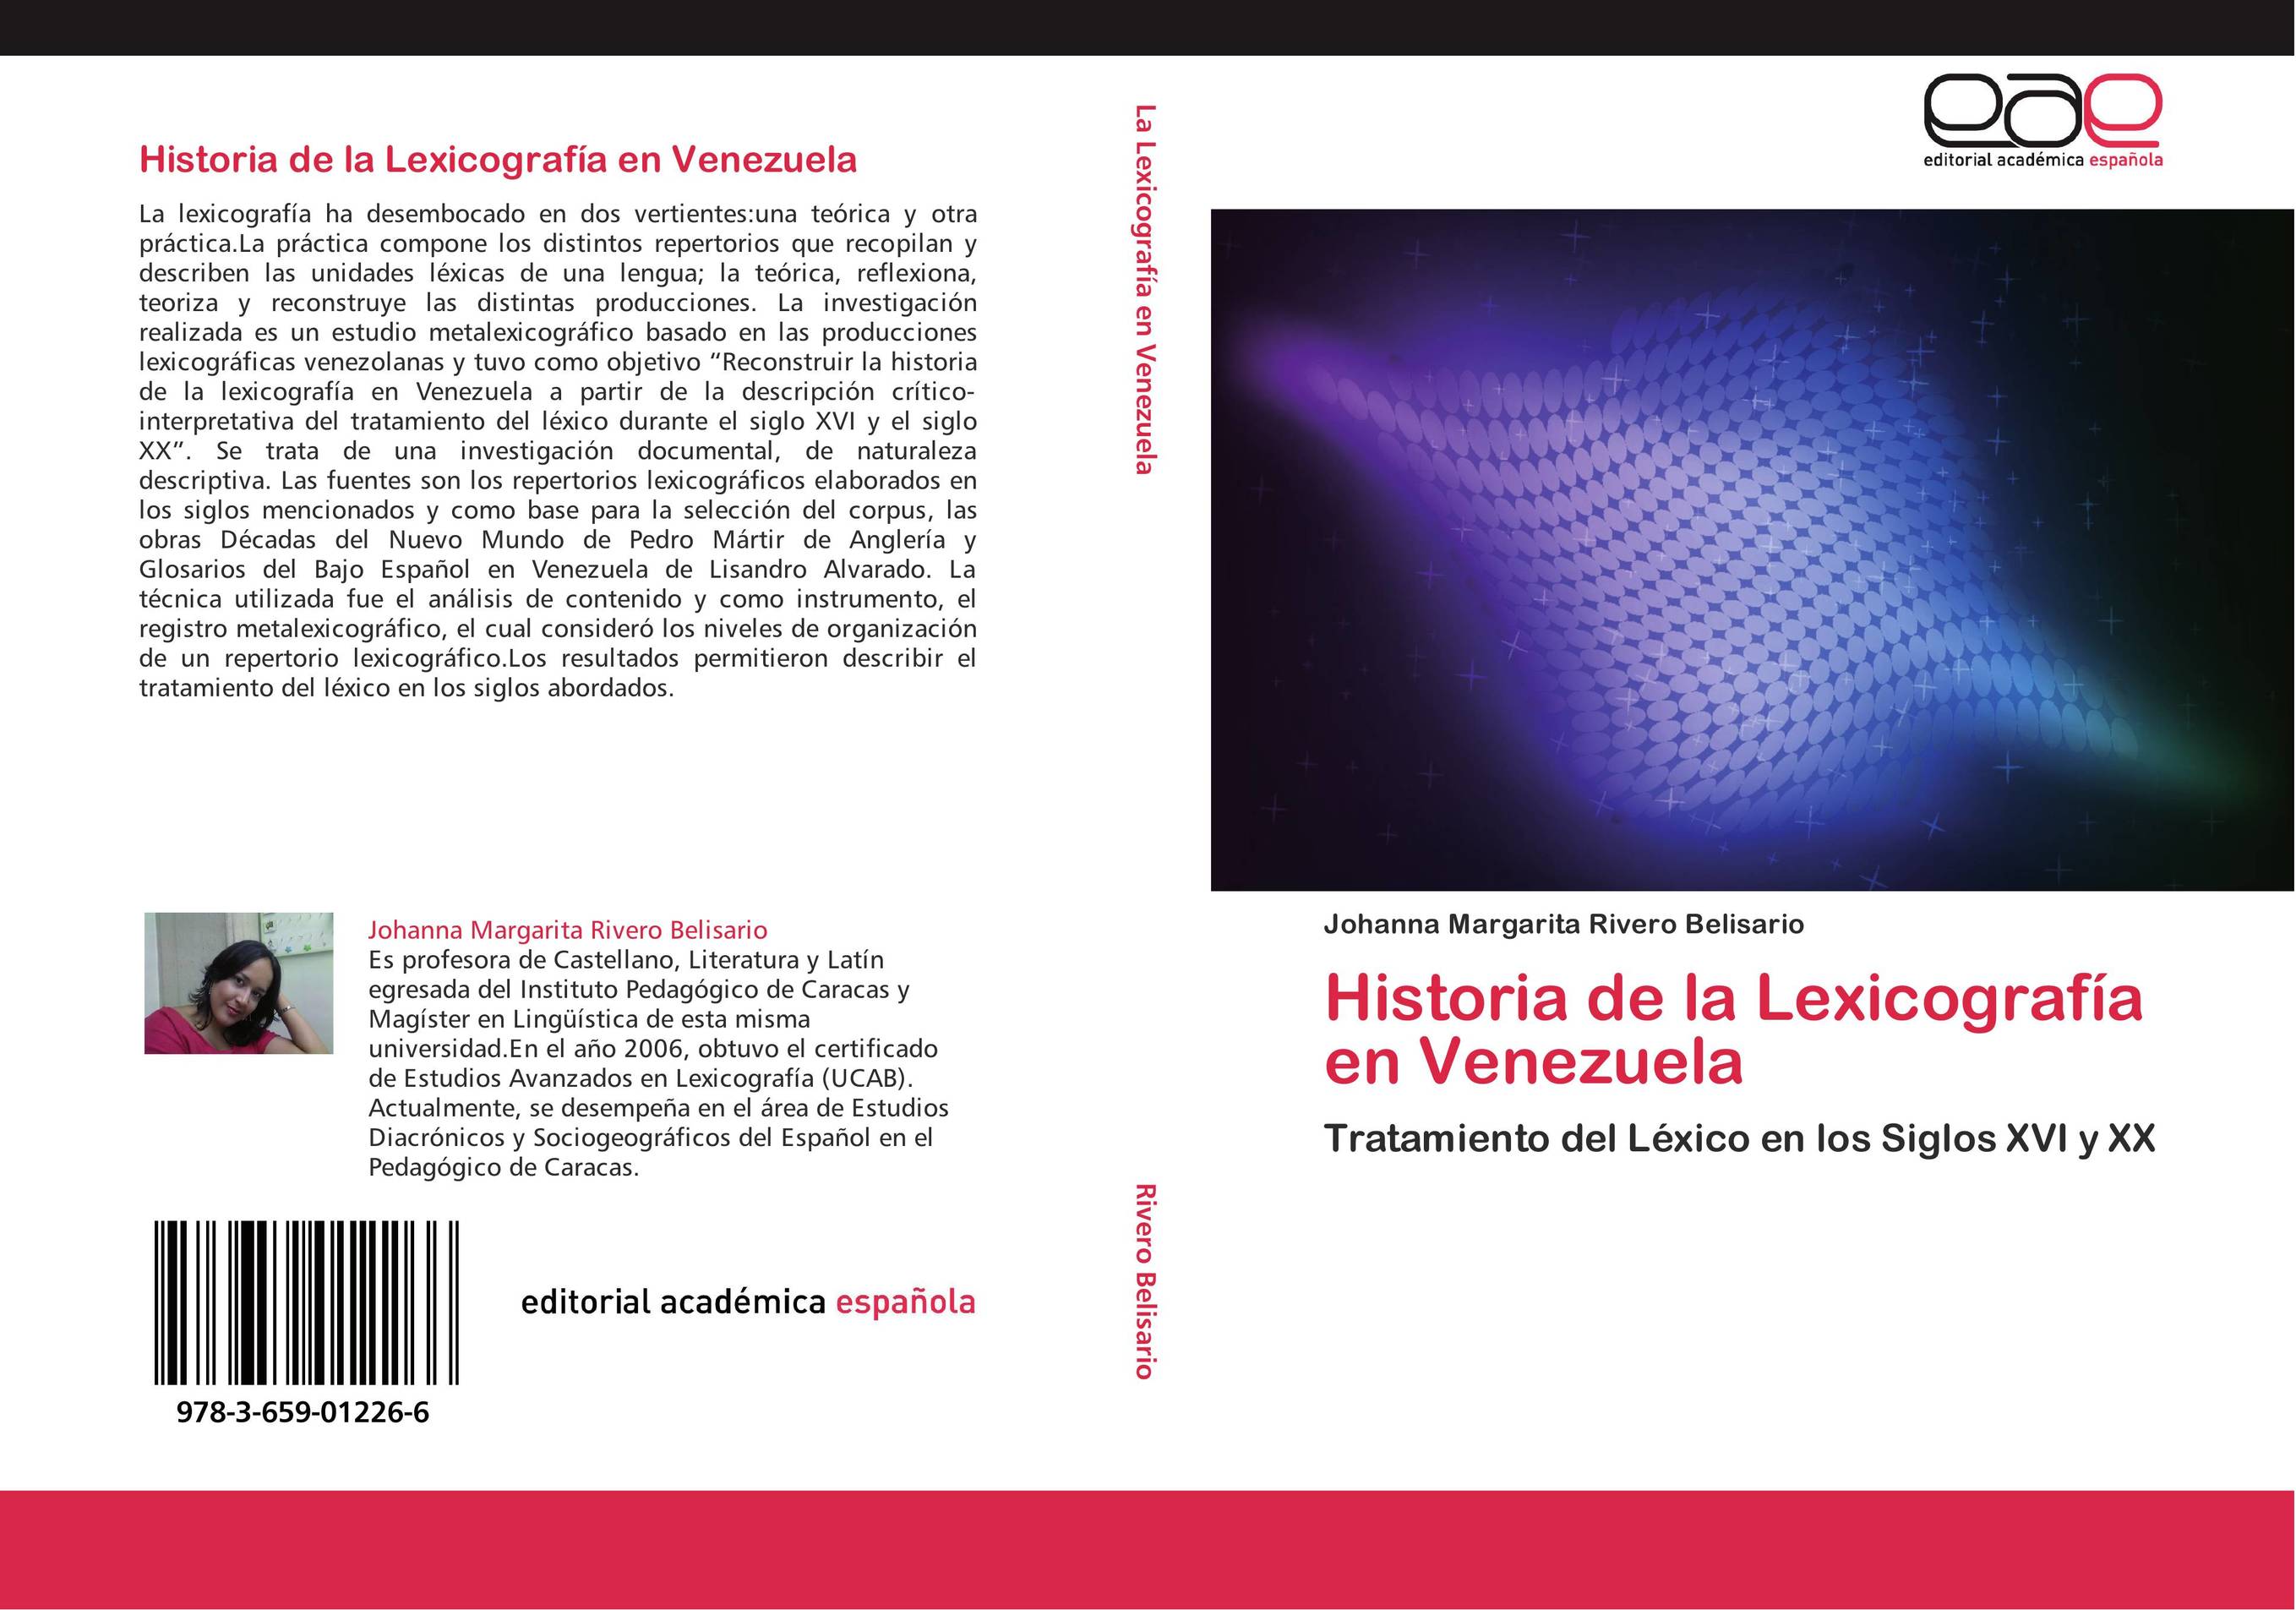 Historia de la Lexicografía en Venezuela